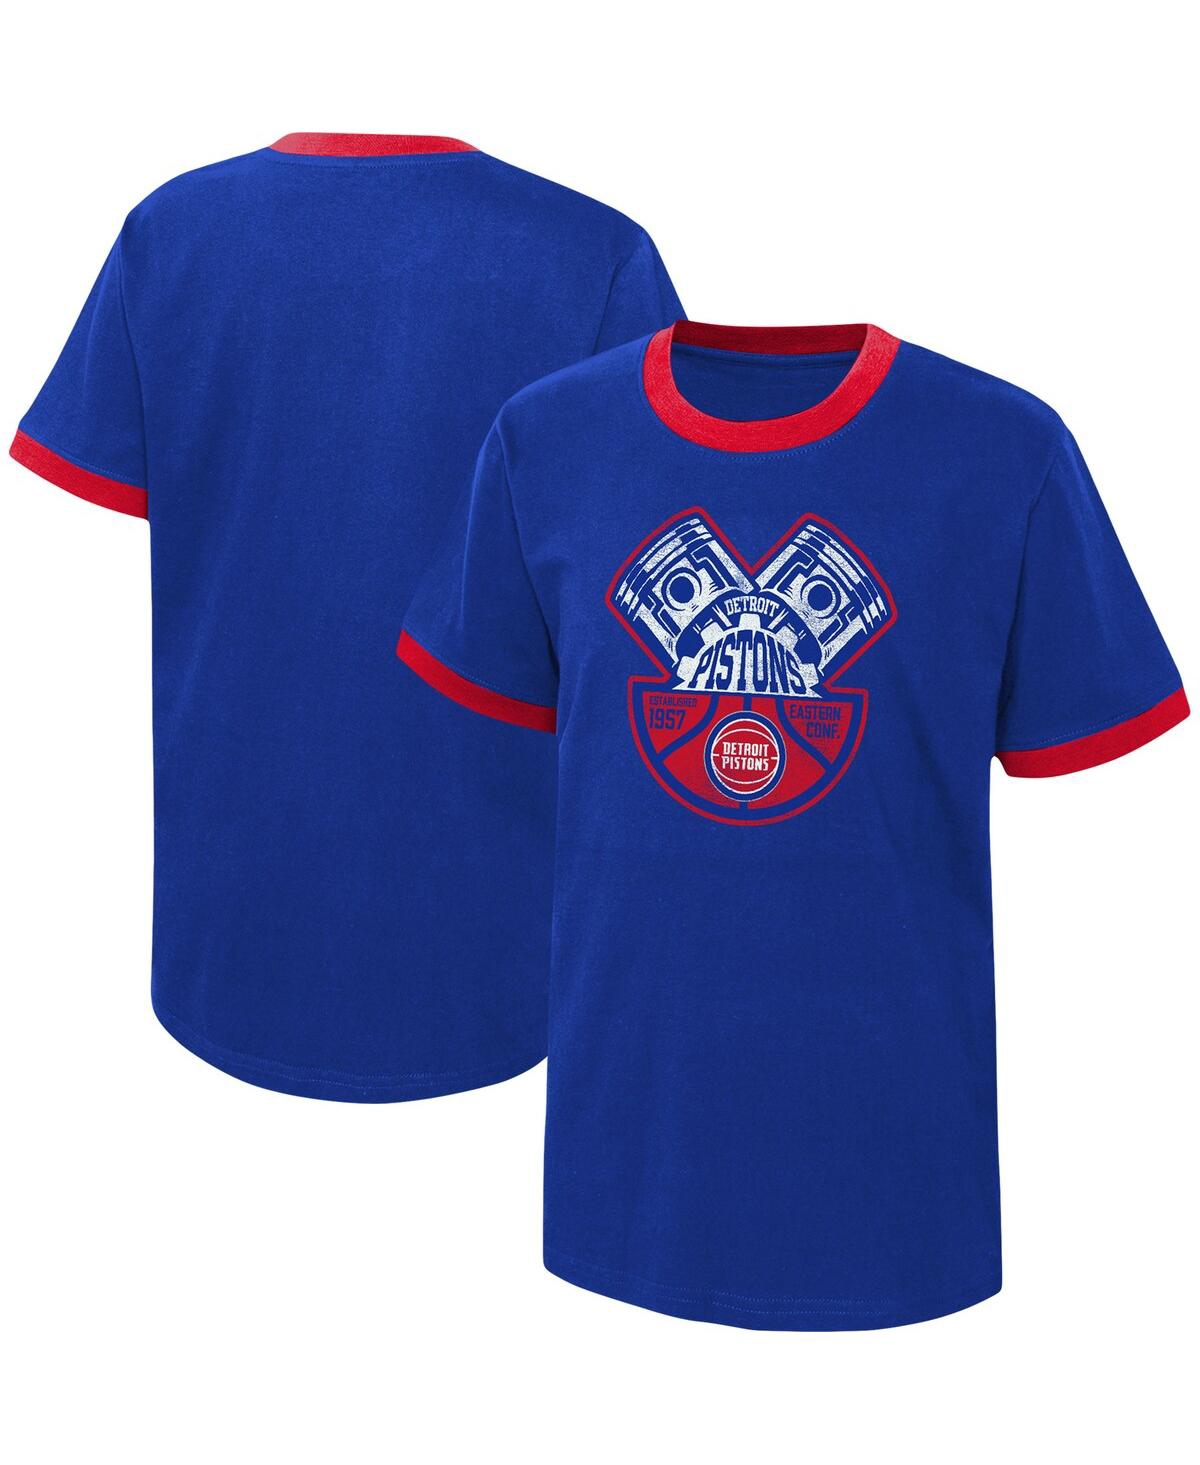 Outerstuff Kids' Big Boys And Girls Blue Detroit Pistons Hoop City Hometown Ringer T-shirt